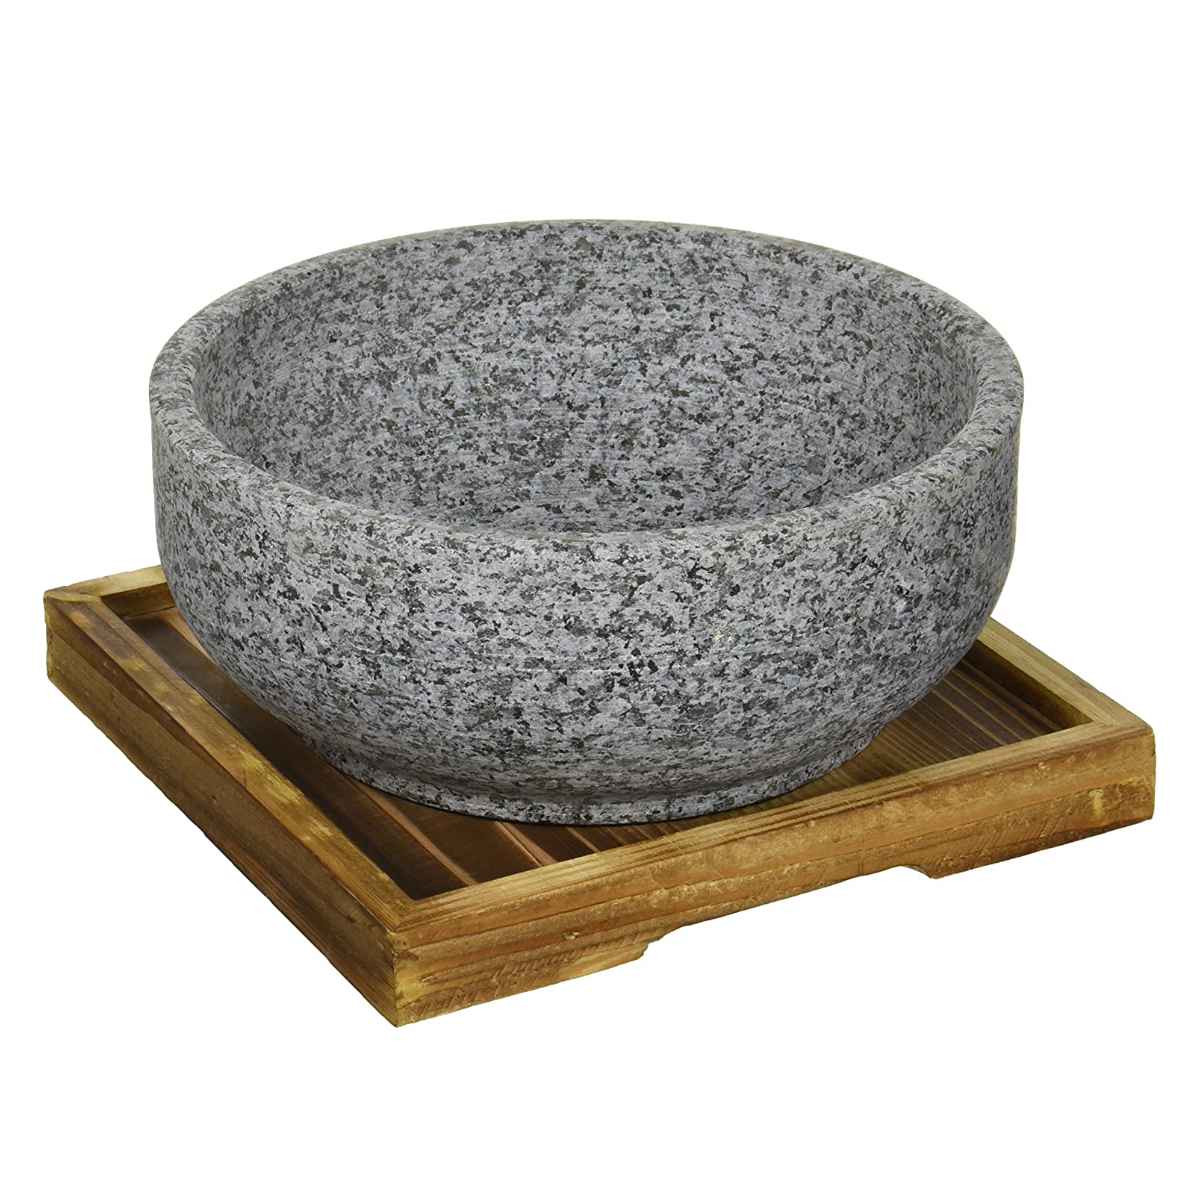 dショッピング |ビビンバ鍋 韓国式 18cm 置台付き 石焼ビビンバ